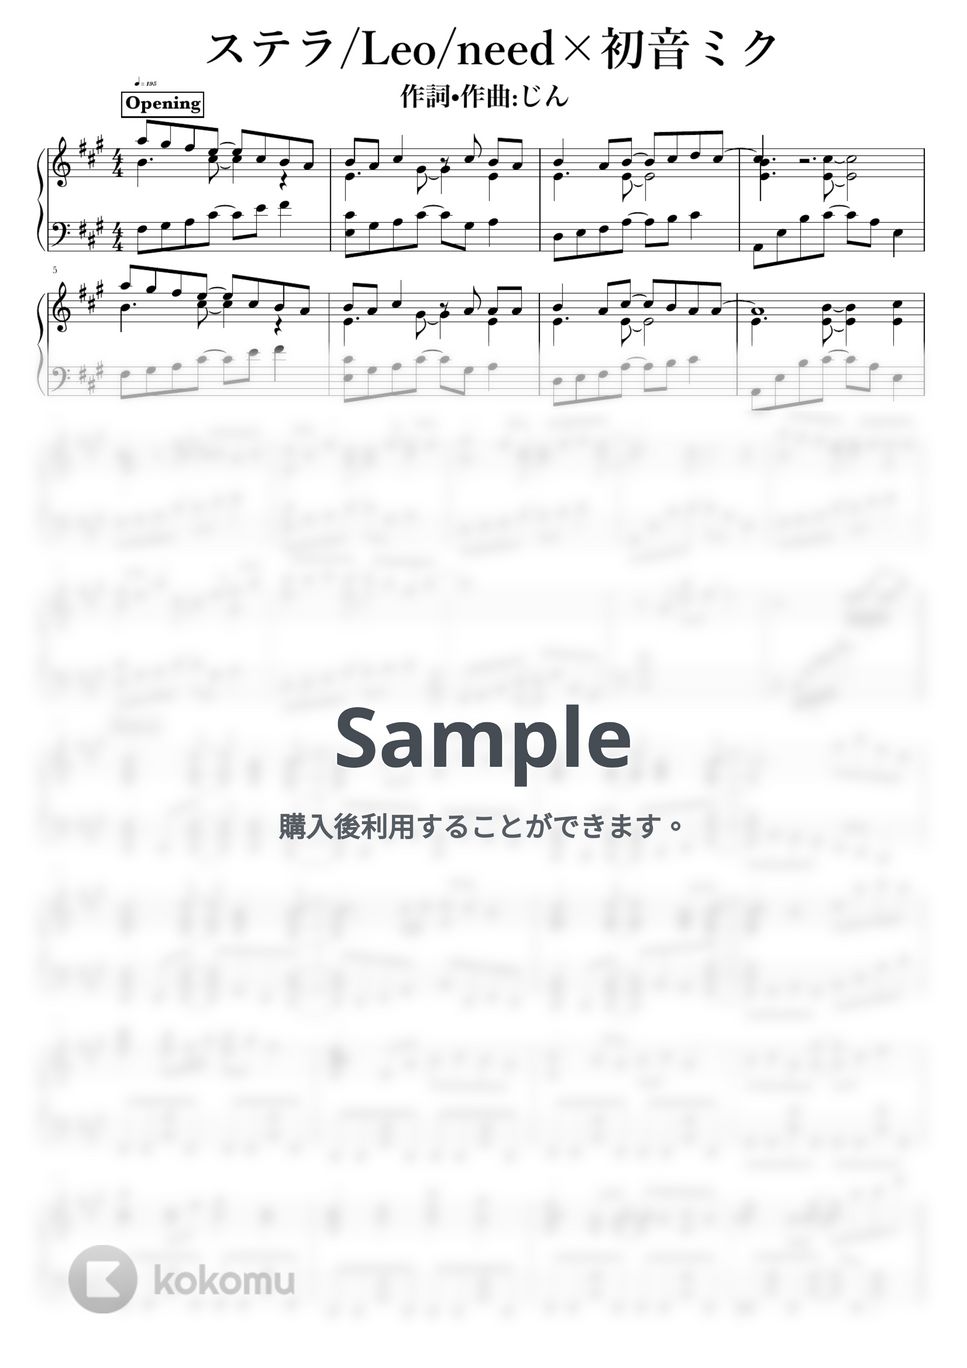 じん - ステラ by NOTES music